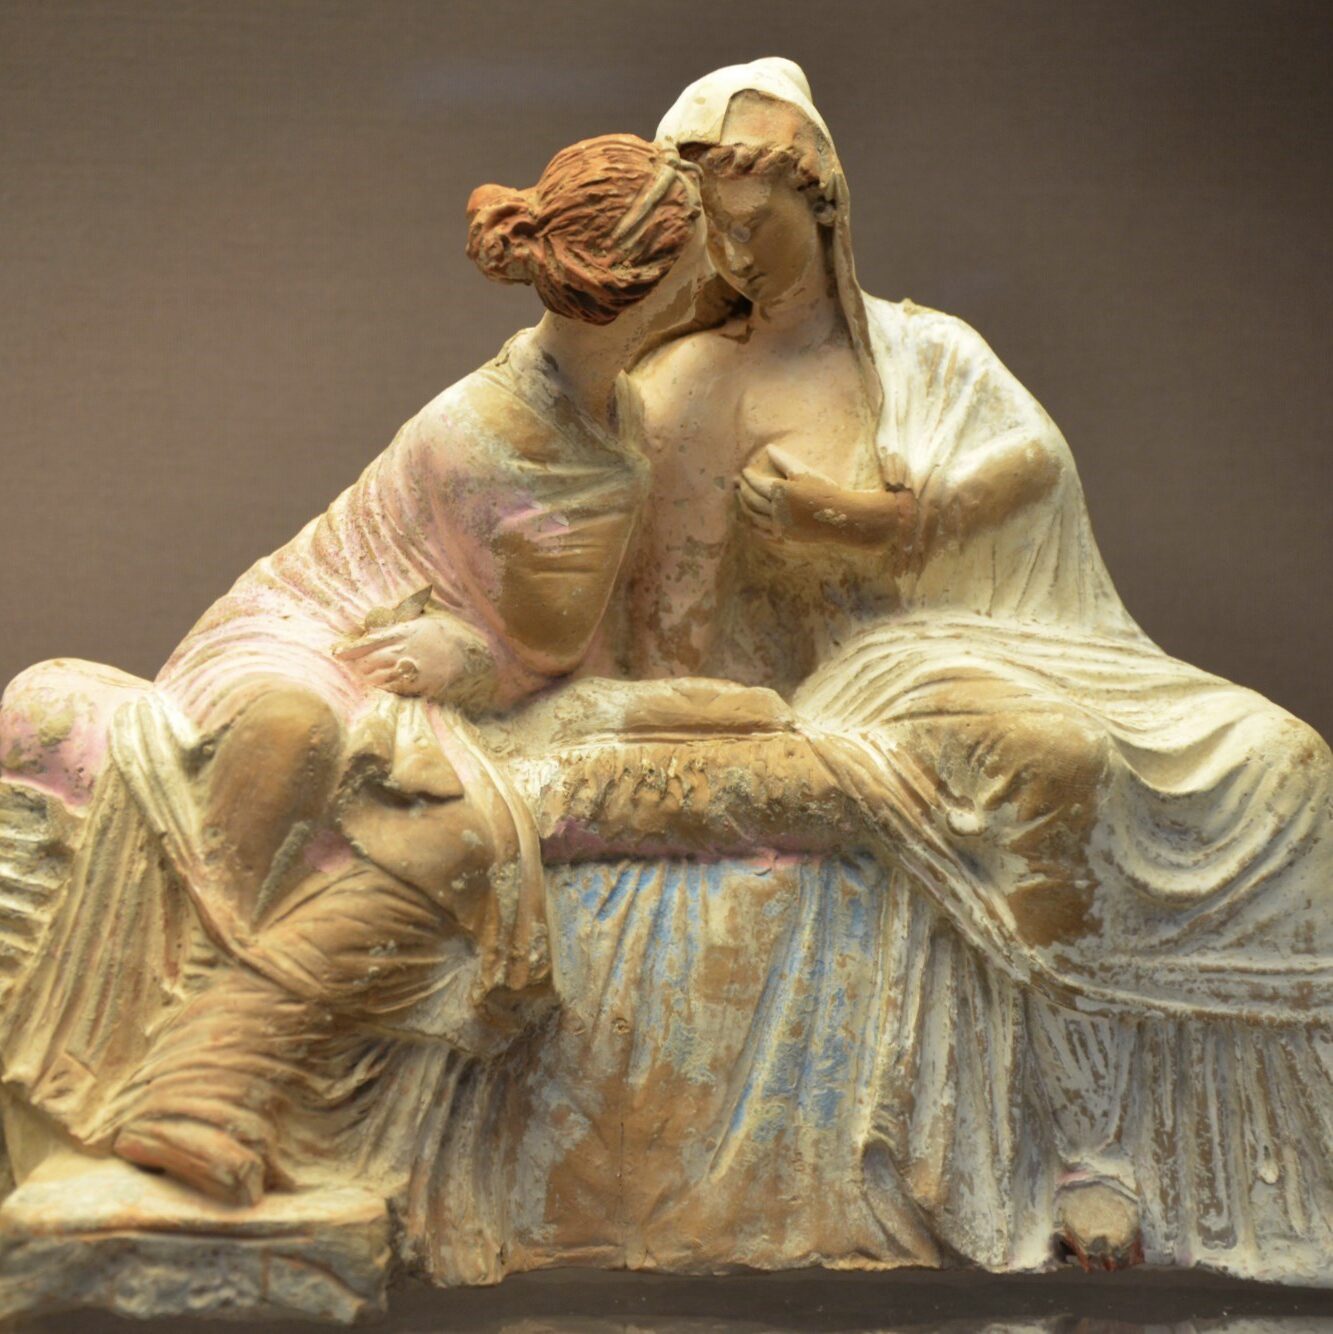 мифология, религия: богини Деметра и Персефона